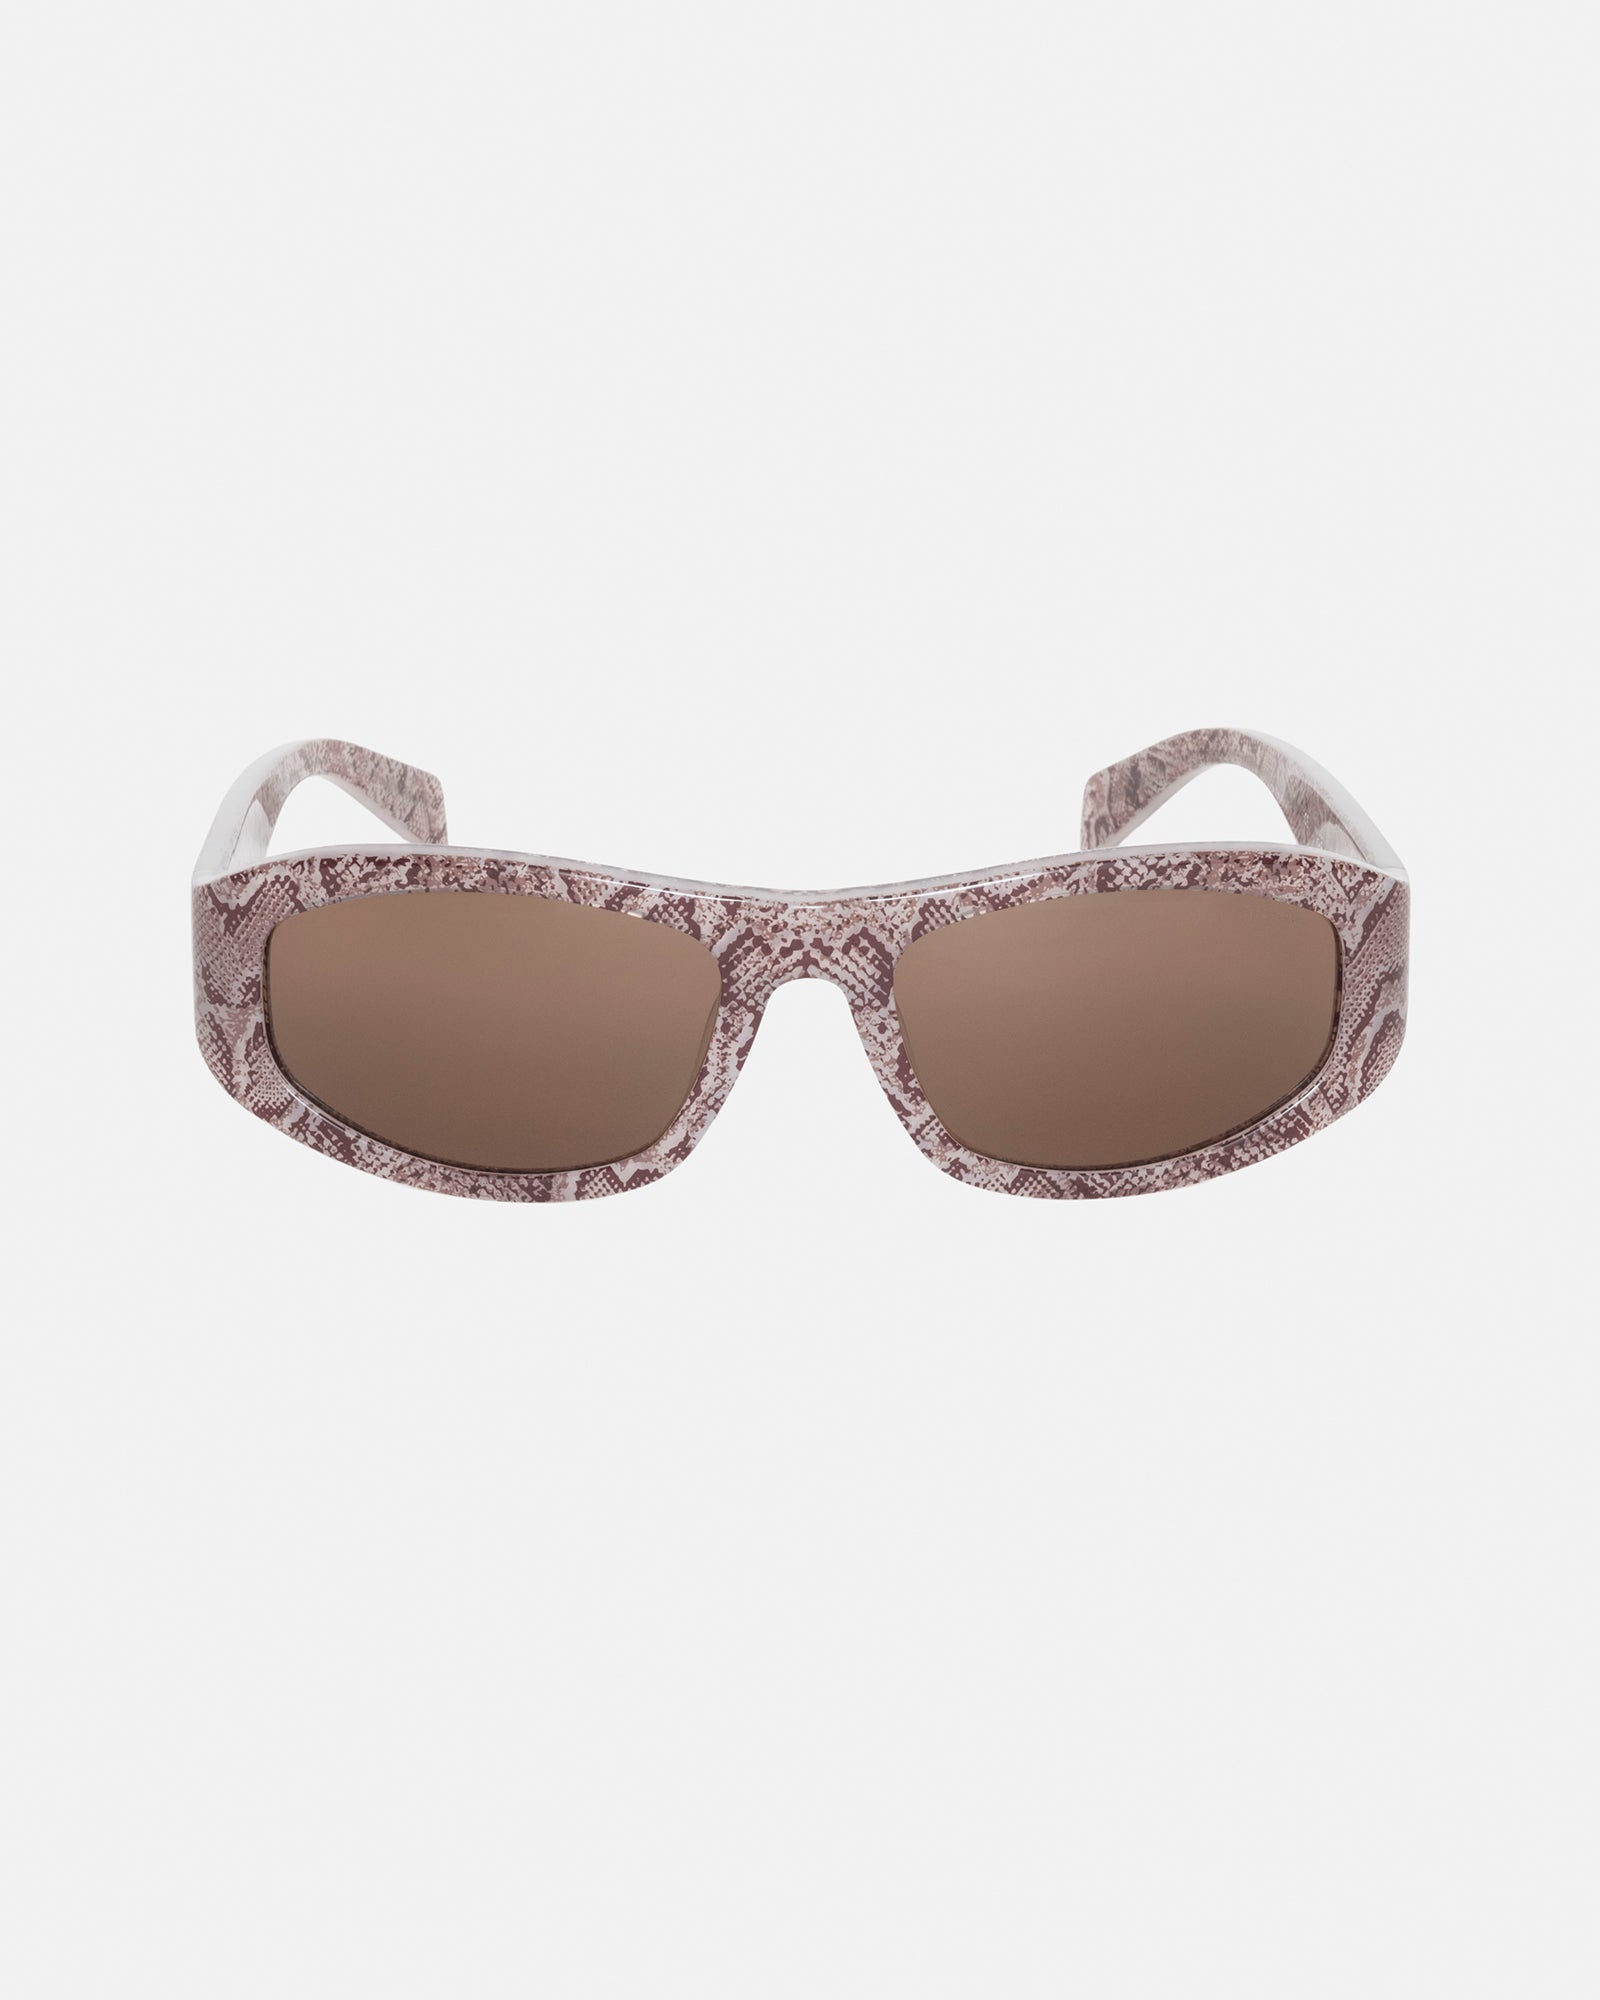 Landon Sunglasses in snake skin/brown – Stüssy